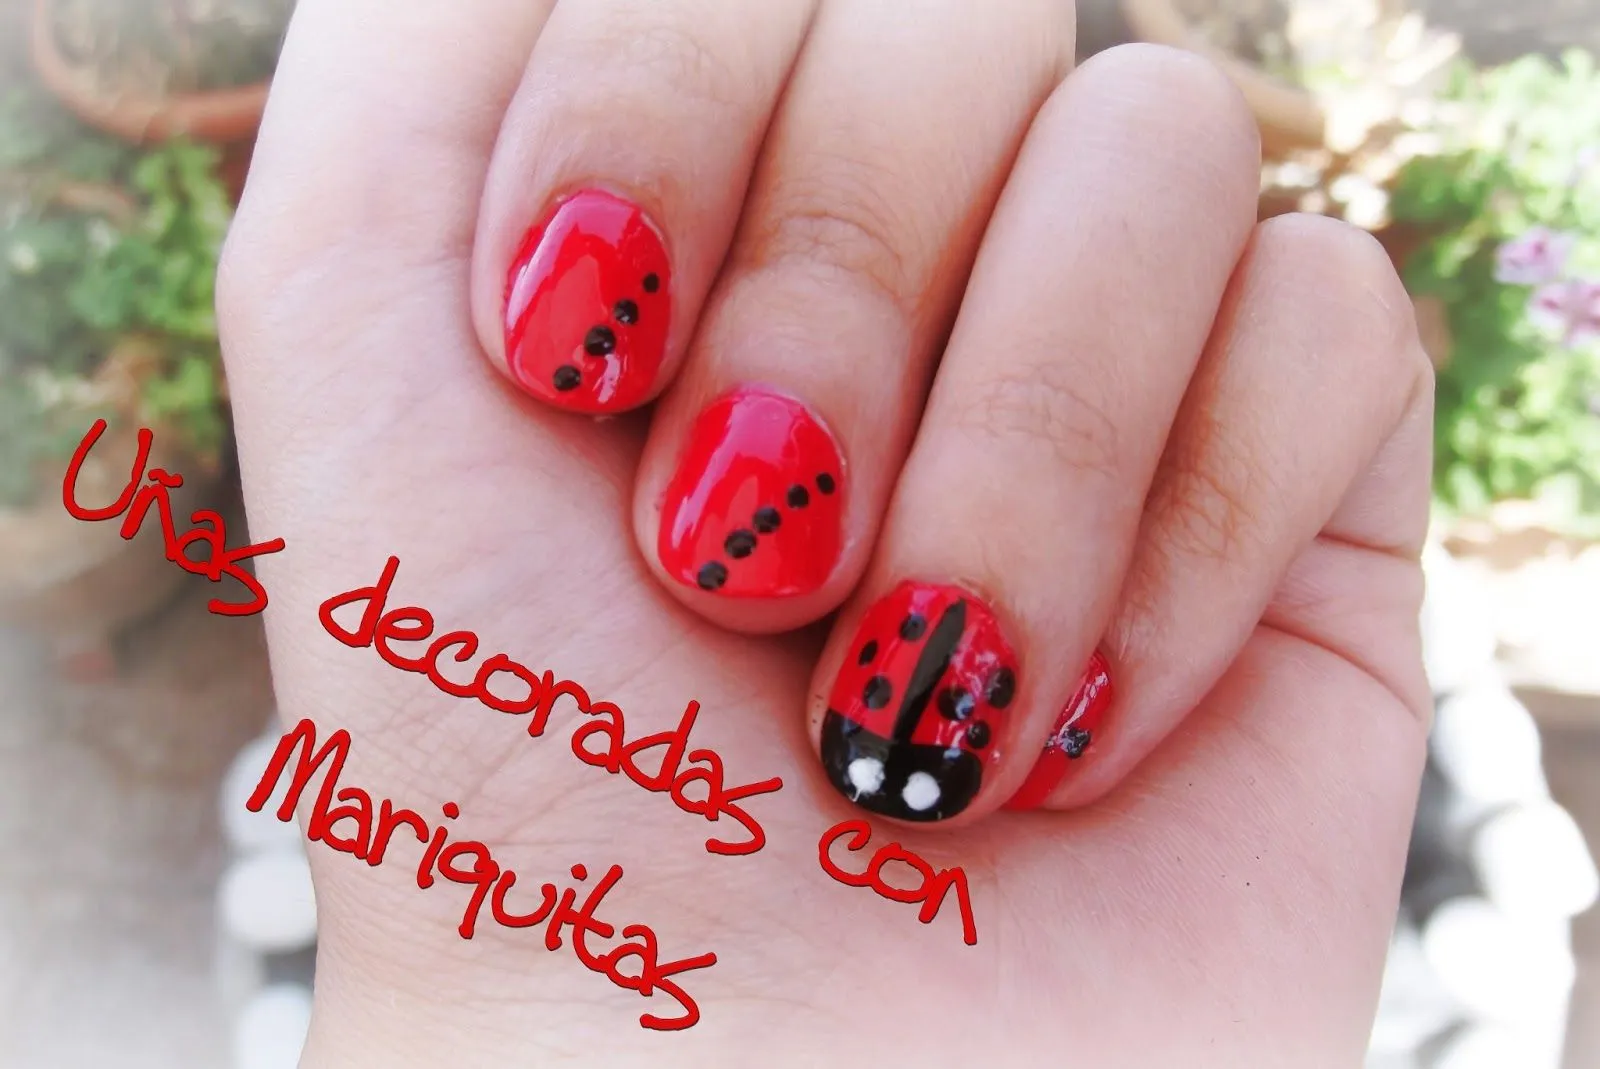 Ver imagenes d uñas decoradas - Imagui